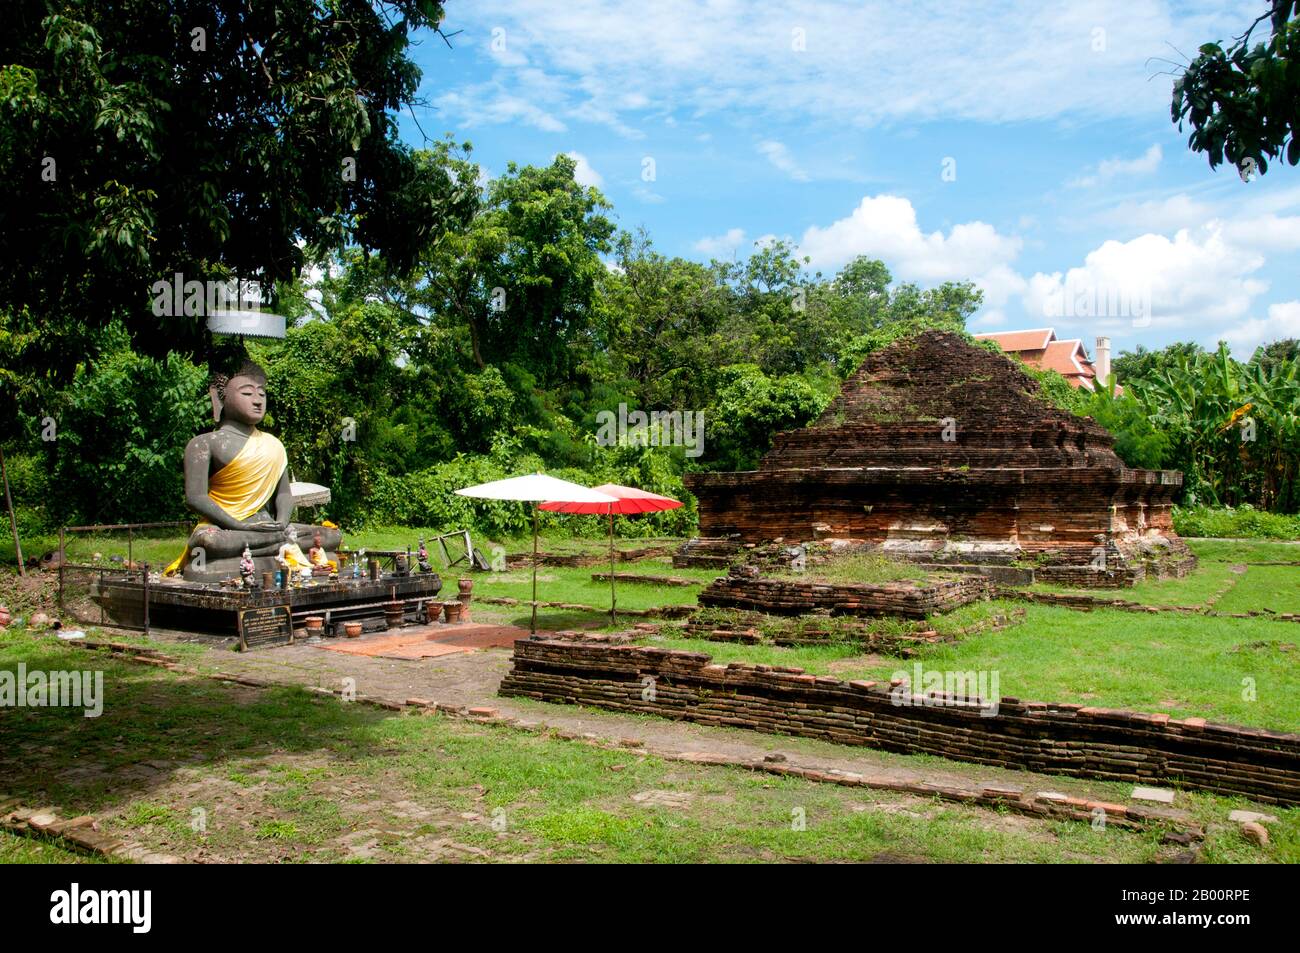 Thailand: Wat Thatkhao, Wiang Kum Kam, Chiang Mai. Im späten 13. Jahrhundert u.Z. aufgegeben und heute in Ruinen, war Wiang Kum kam einst die Hauptstadt der nördlichen Region Thailands und liegt südlich von Chiang Mai. Es wurde von König Mangrai zu einer Zeit im 13. Jahrhundert nach seinem Sieg über das Hariphunchai Königreich des modernen Lamphun gebaut. Doch nachdem die Stadt mehrere Male überflutet hatte, entschied sich Mangrai, die Hauptstadt seines Königreichs umzusiedeln und verlegte sie weiter nördlich am Fluss Ping zu einem Ort, der jetzt die Stadt Chiang Mai ist. Stockfoto